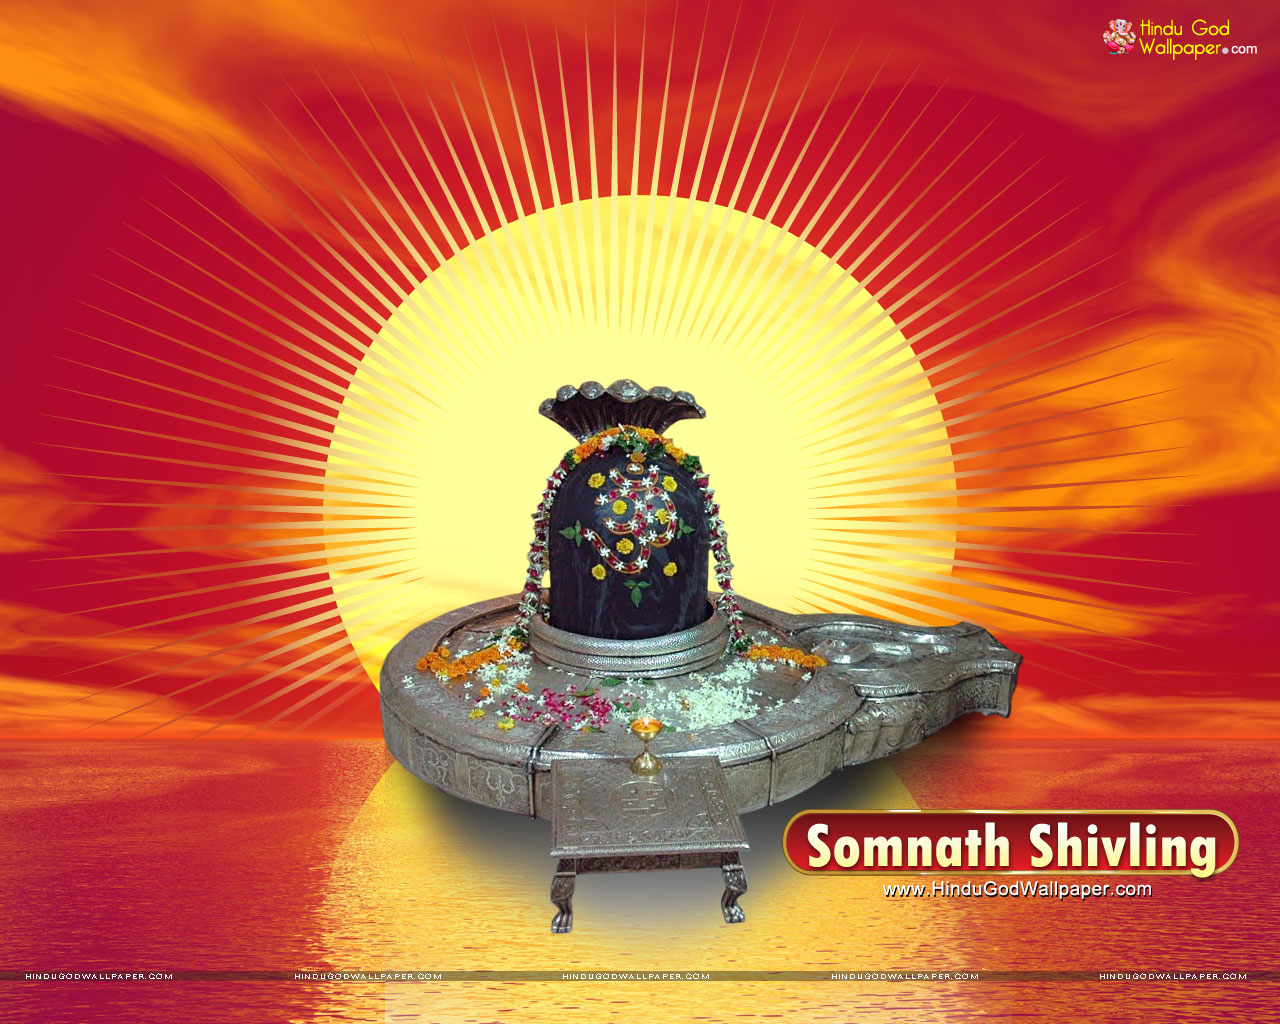 Somnath Shivling